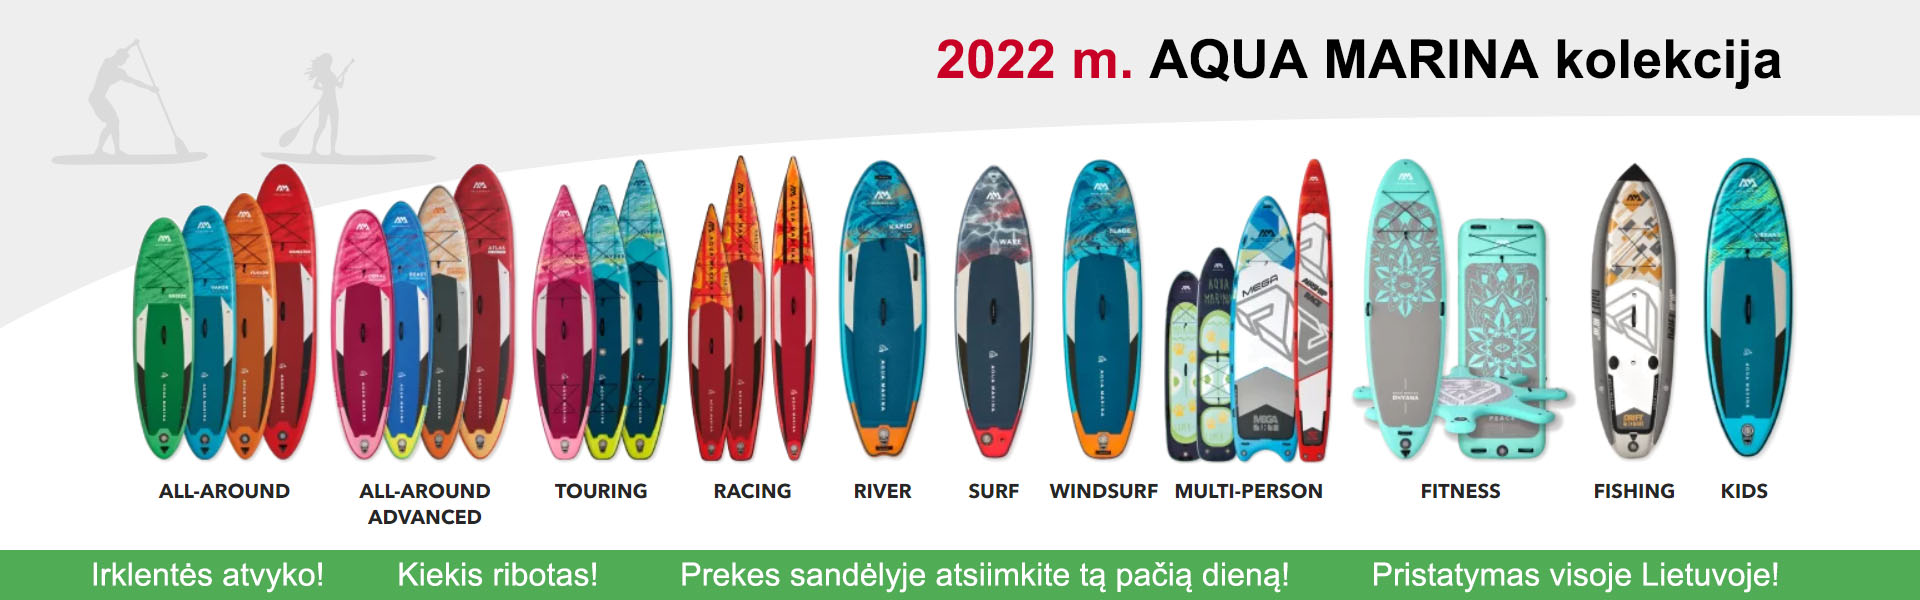 2022 metų Aqua Marina irklenčių kolekcija